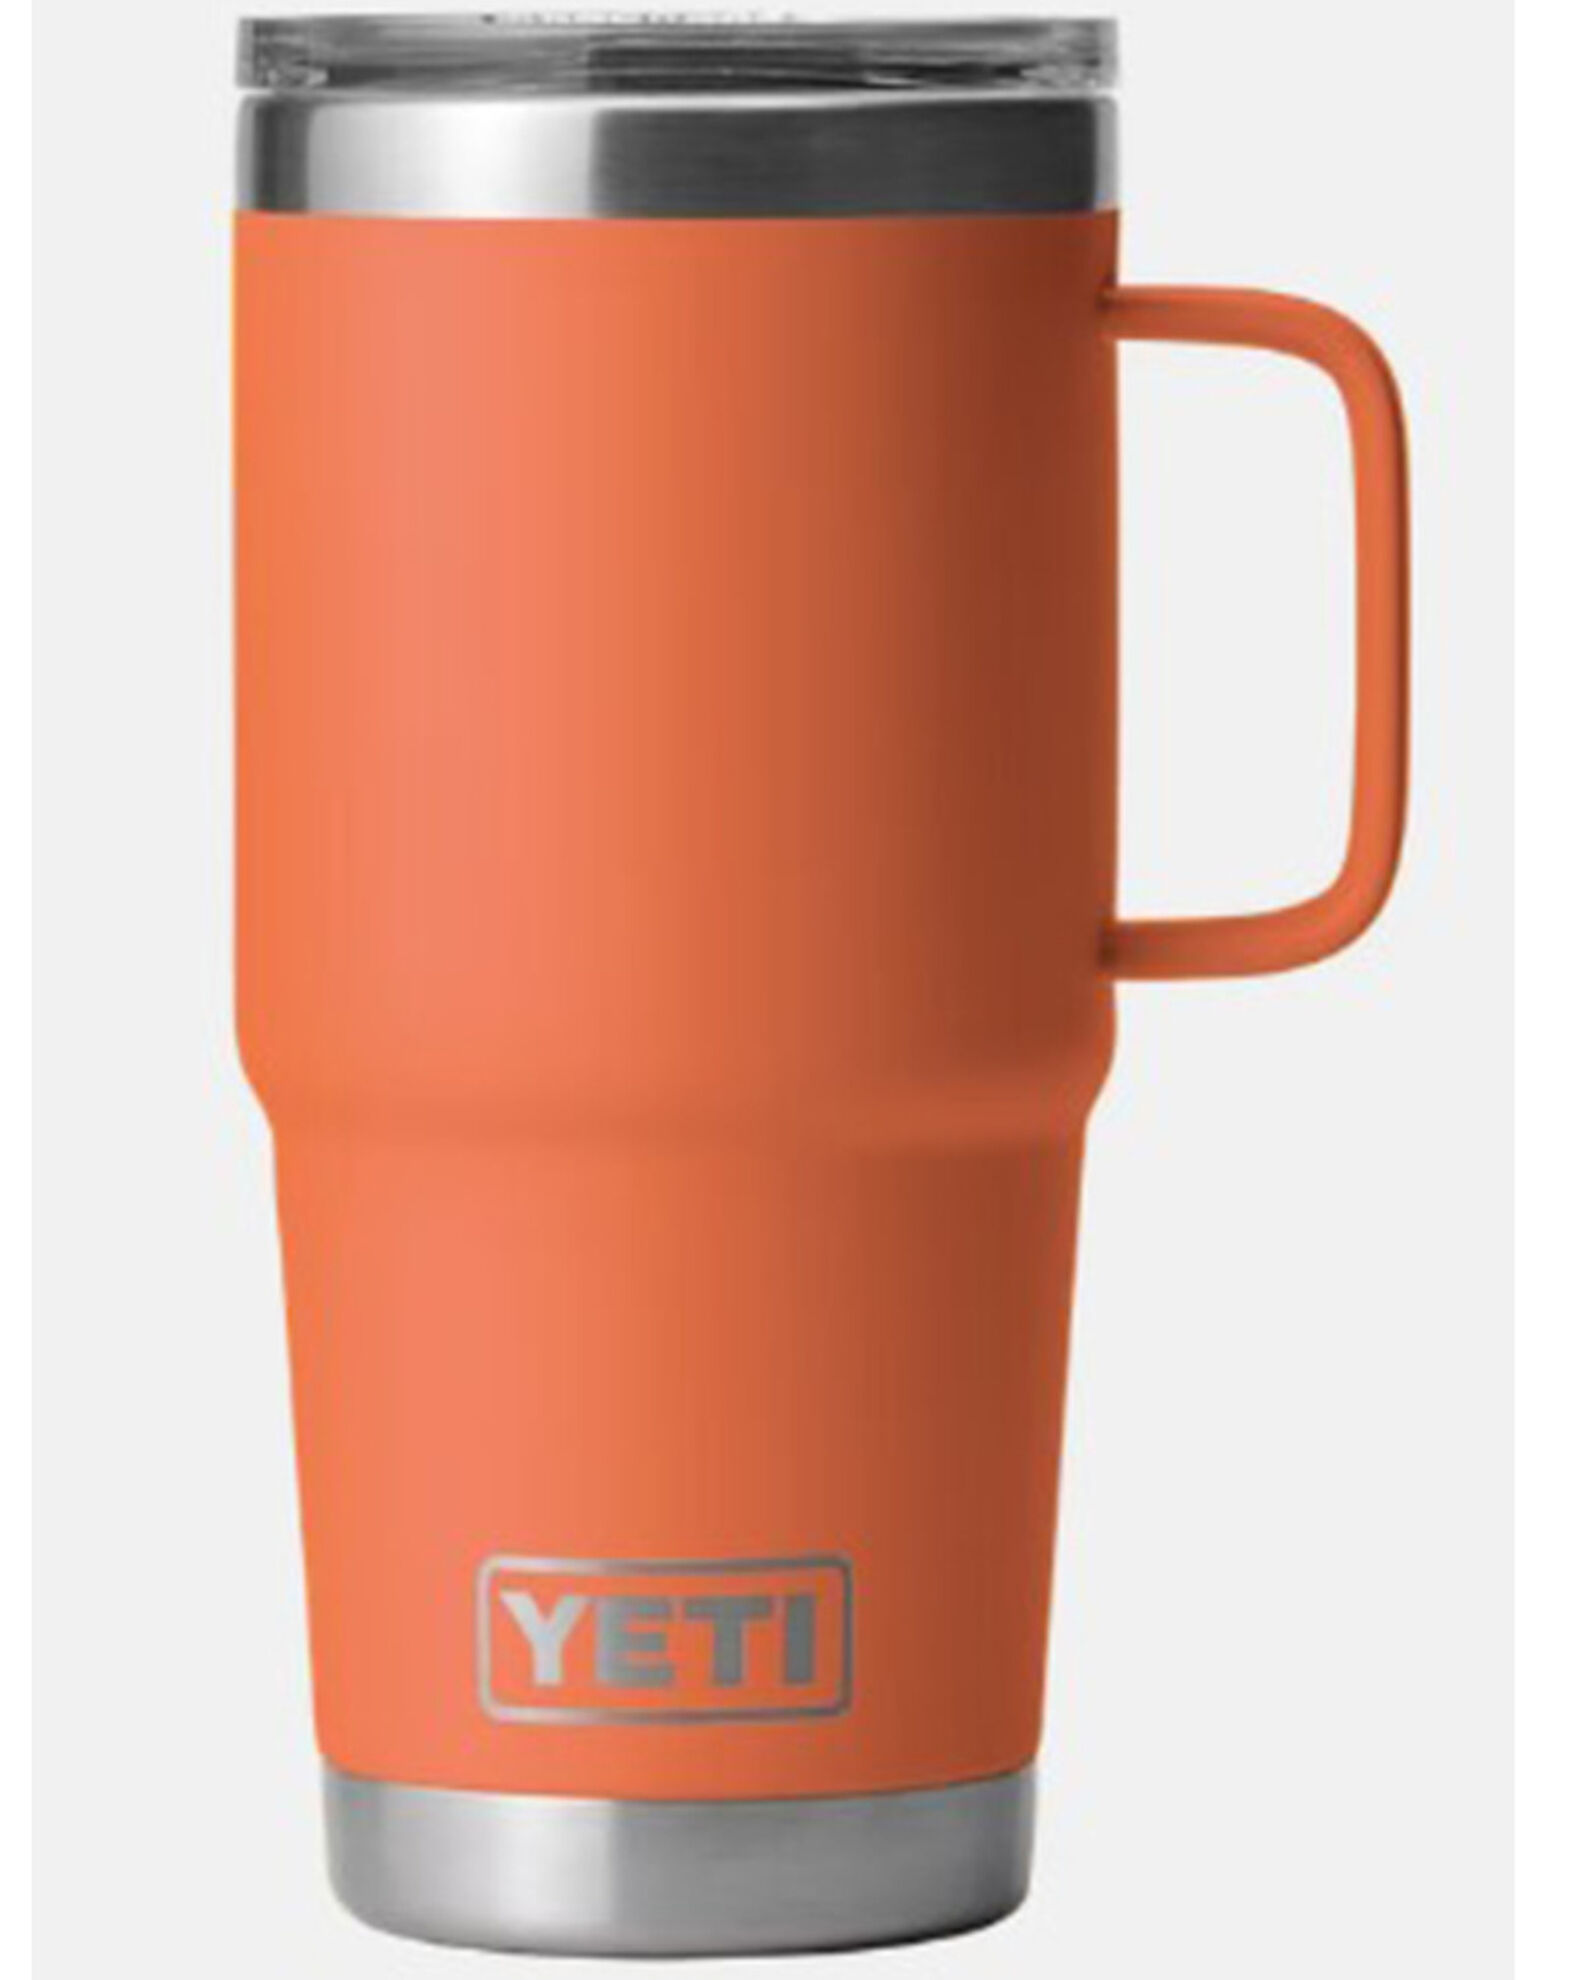 YETI Rambler 20oz Travel Mug with Stronghold Lid